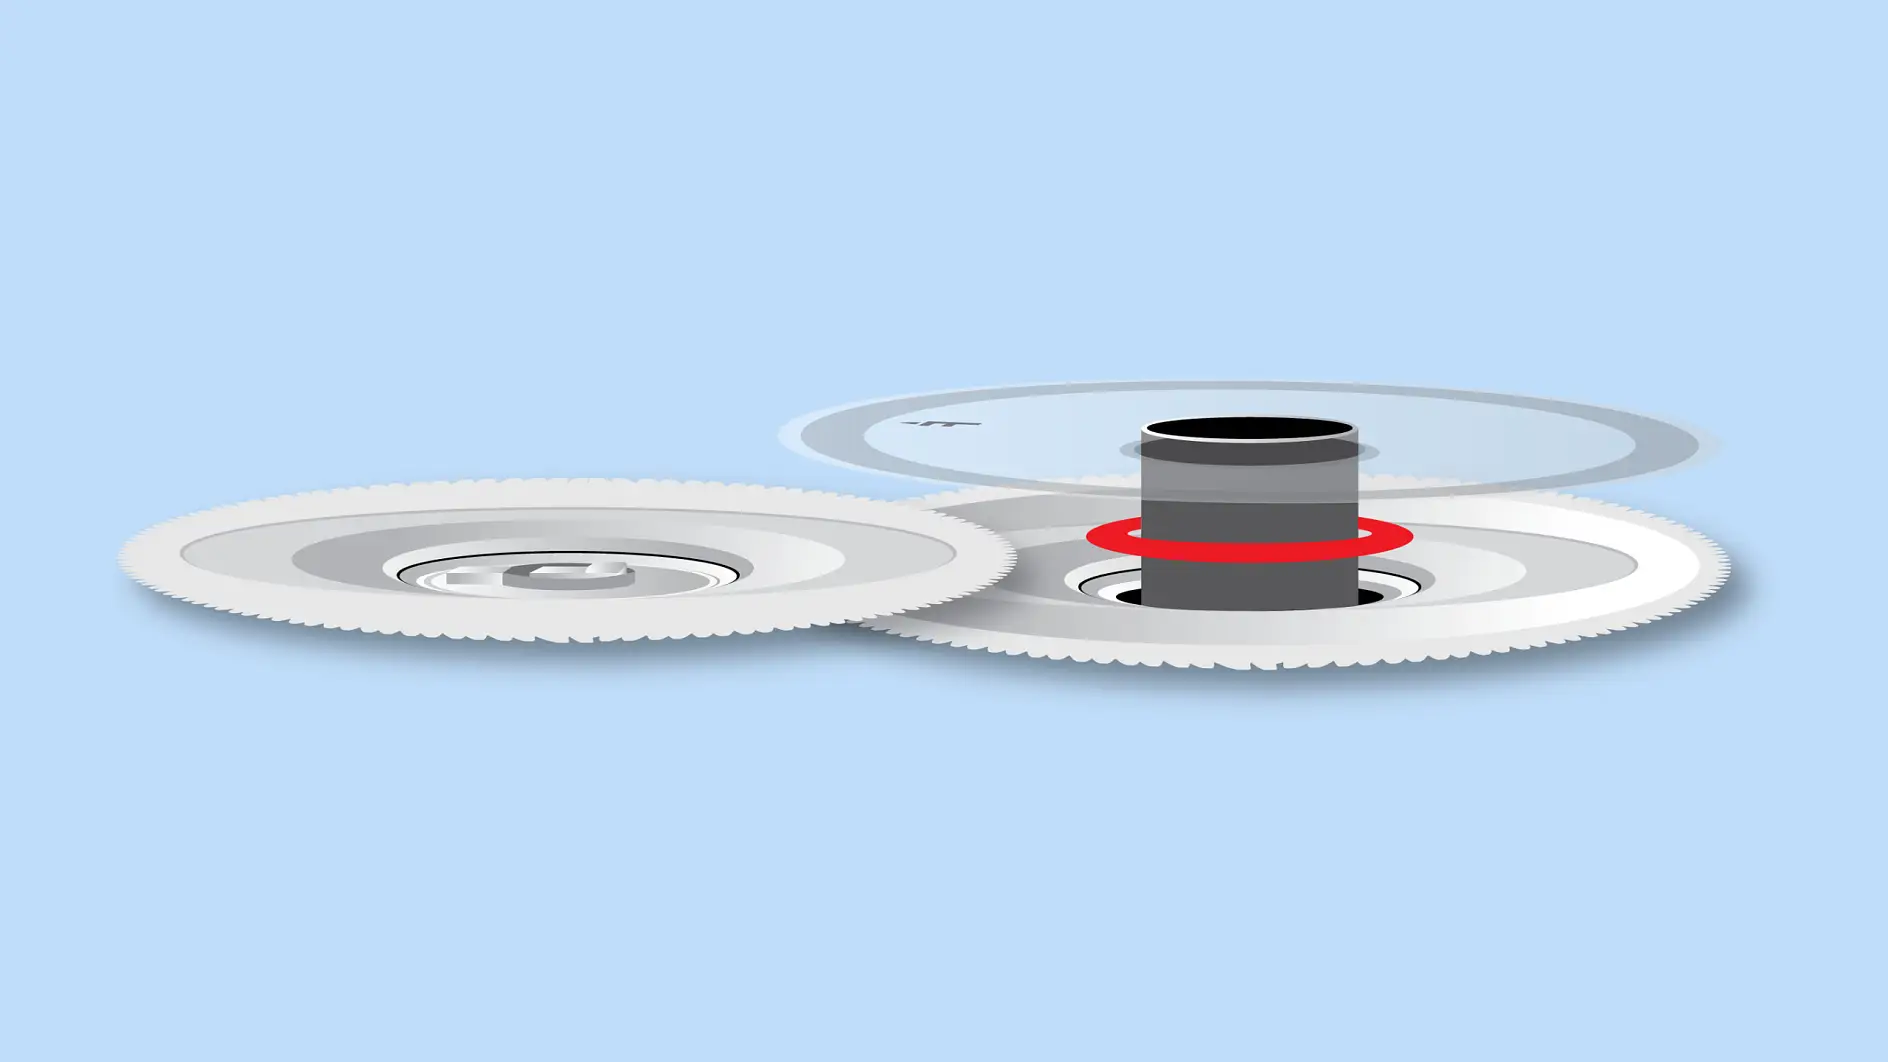 Volan Diskleri, kalıp kesim ile plastik alt katmana monte edilmektedir.